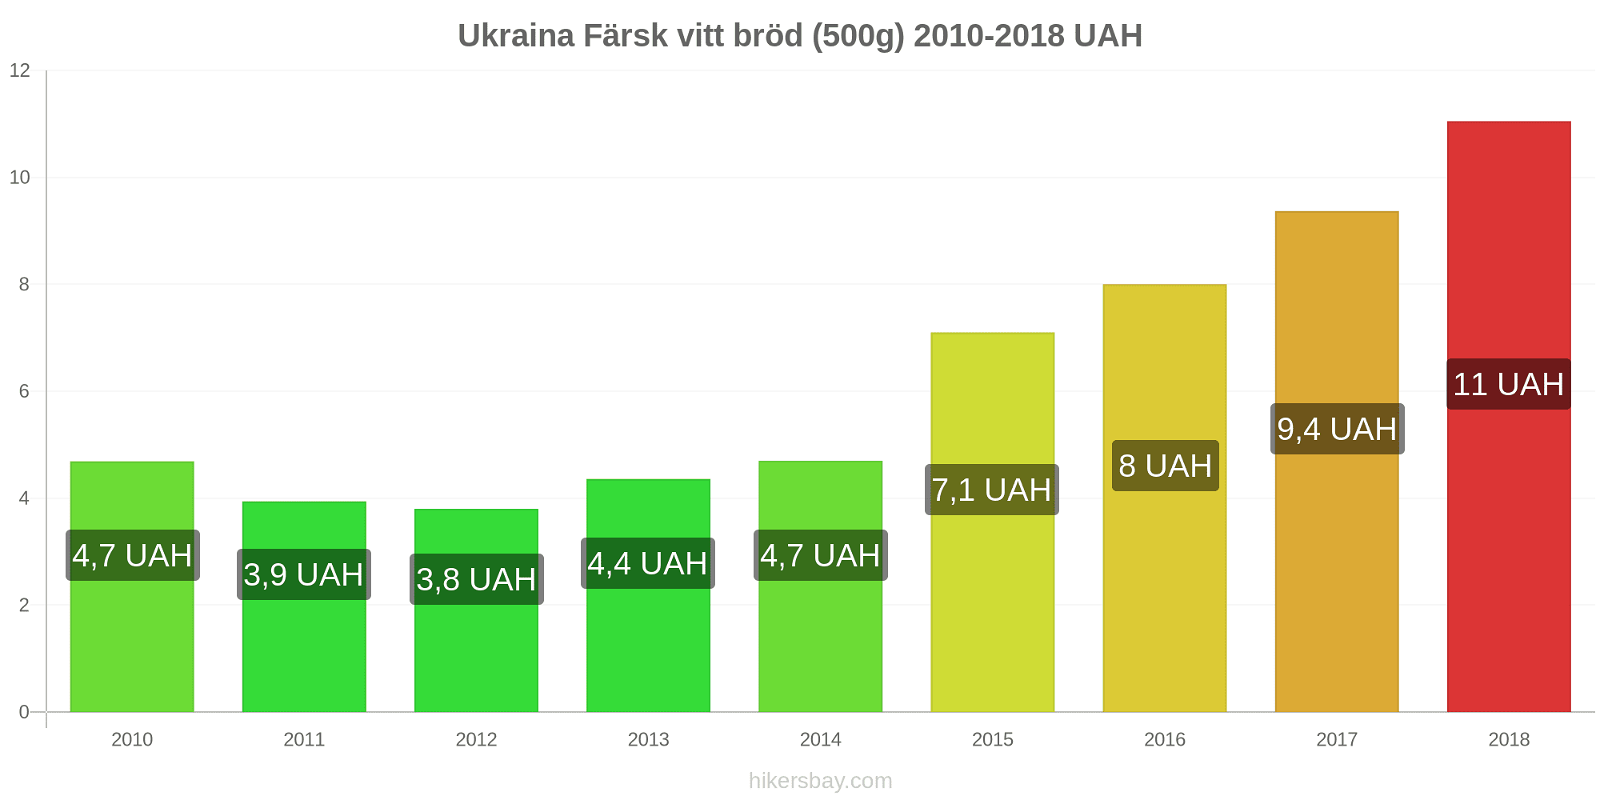 Ukraina prisändringar Färsk vitt bröd (500g) hikersbay.com